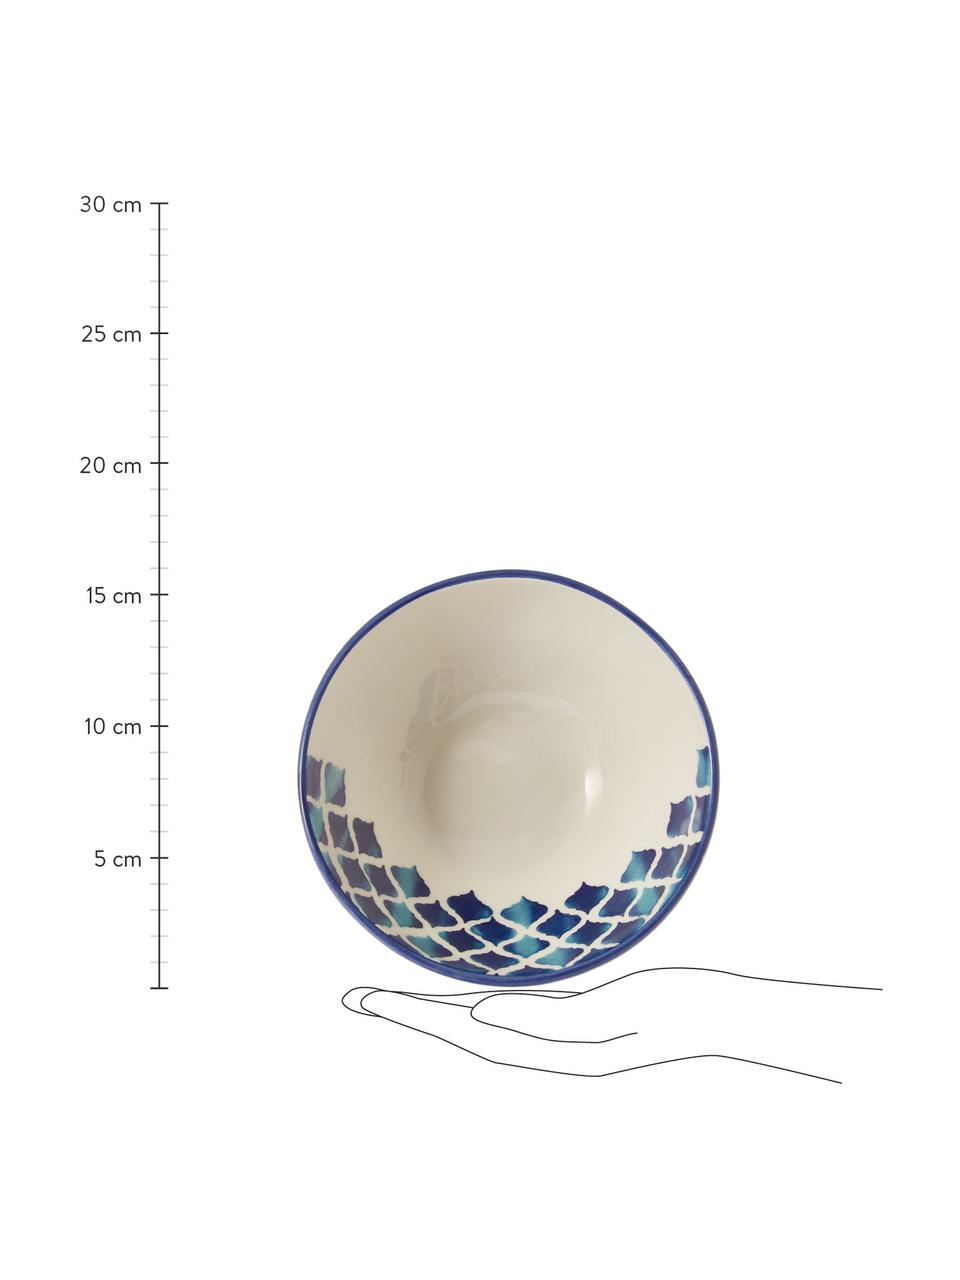 Ręcznie wykonana miseczka Ikat, 6 szt., Ceramika, Biały, niebieski, Ø 16 cm